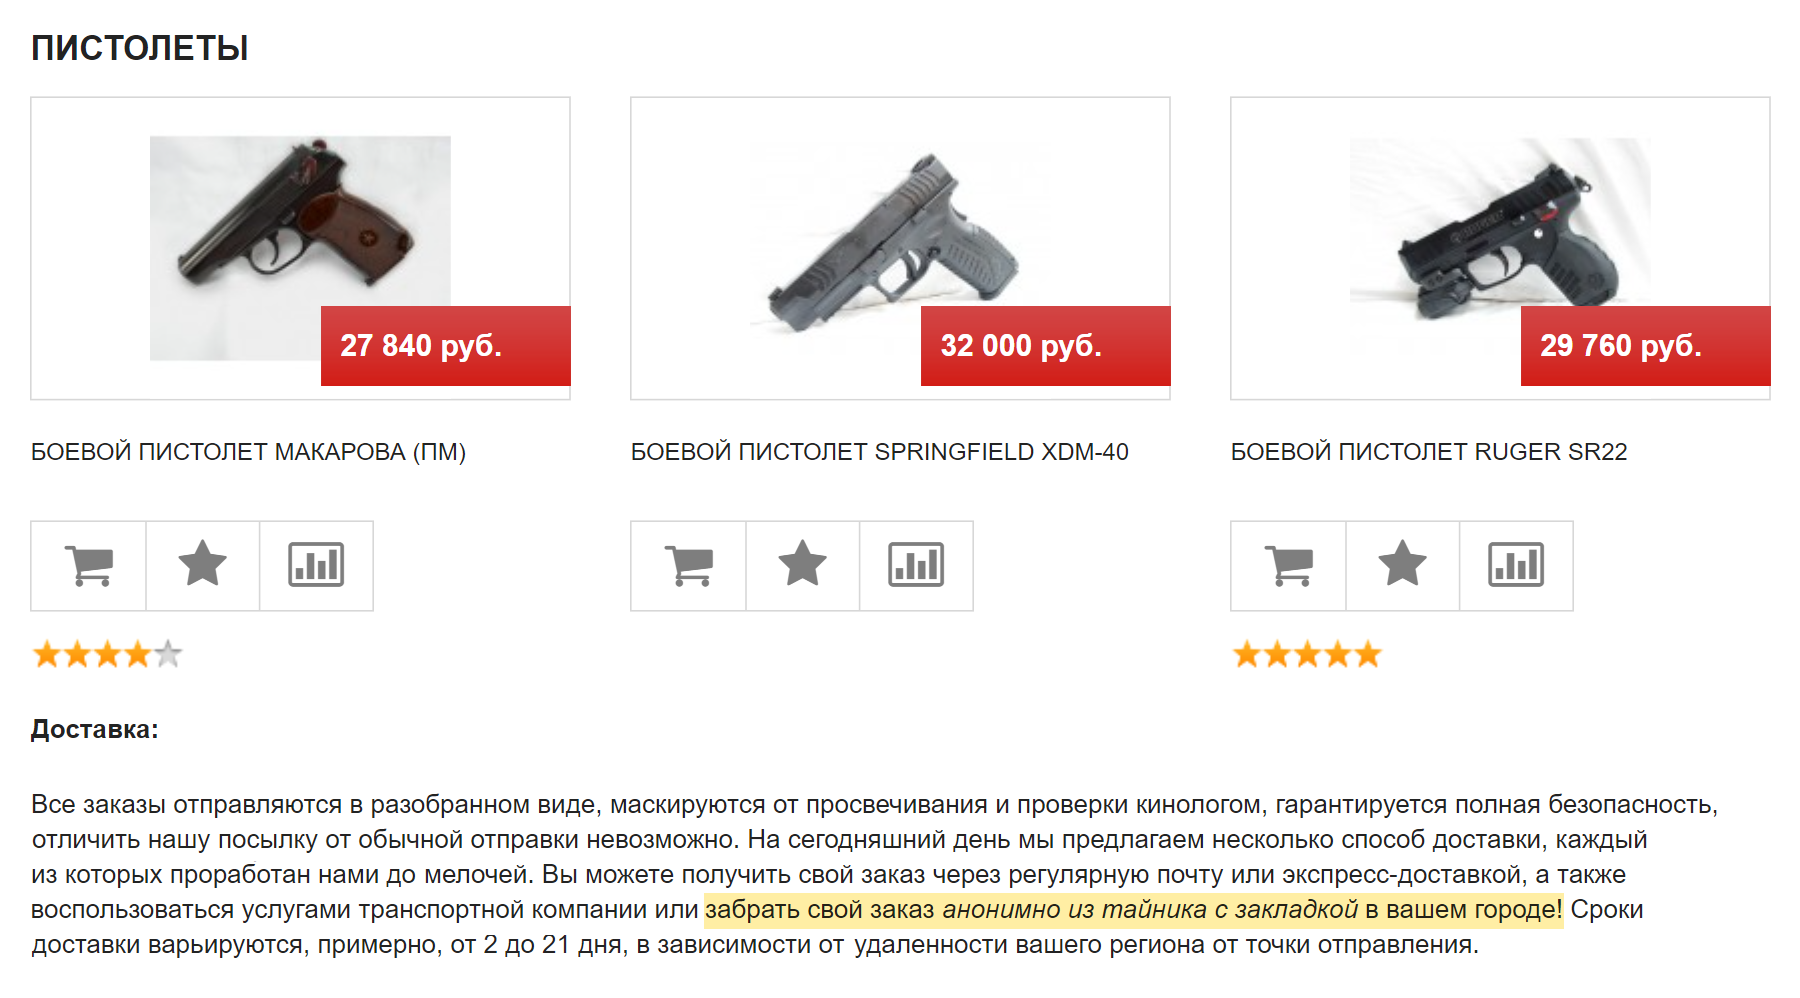 Боевой пистолет Макарова продают за 27 840 ₽, покупатель сможет забрать его из тайника